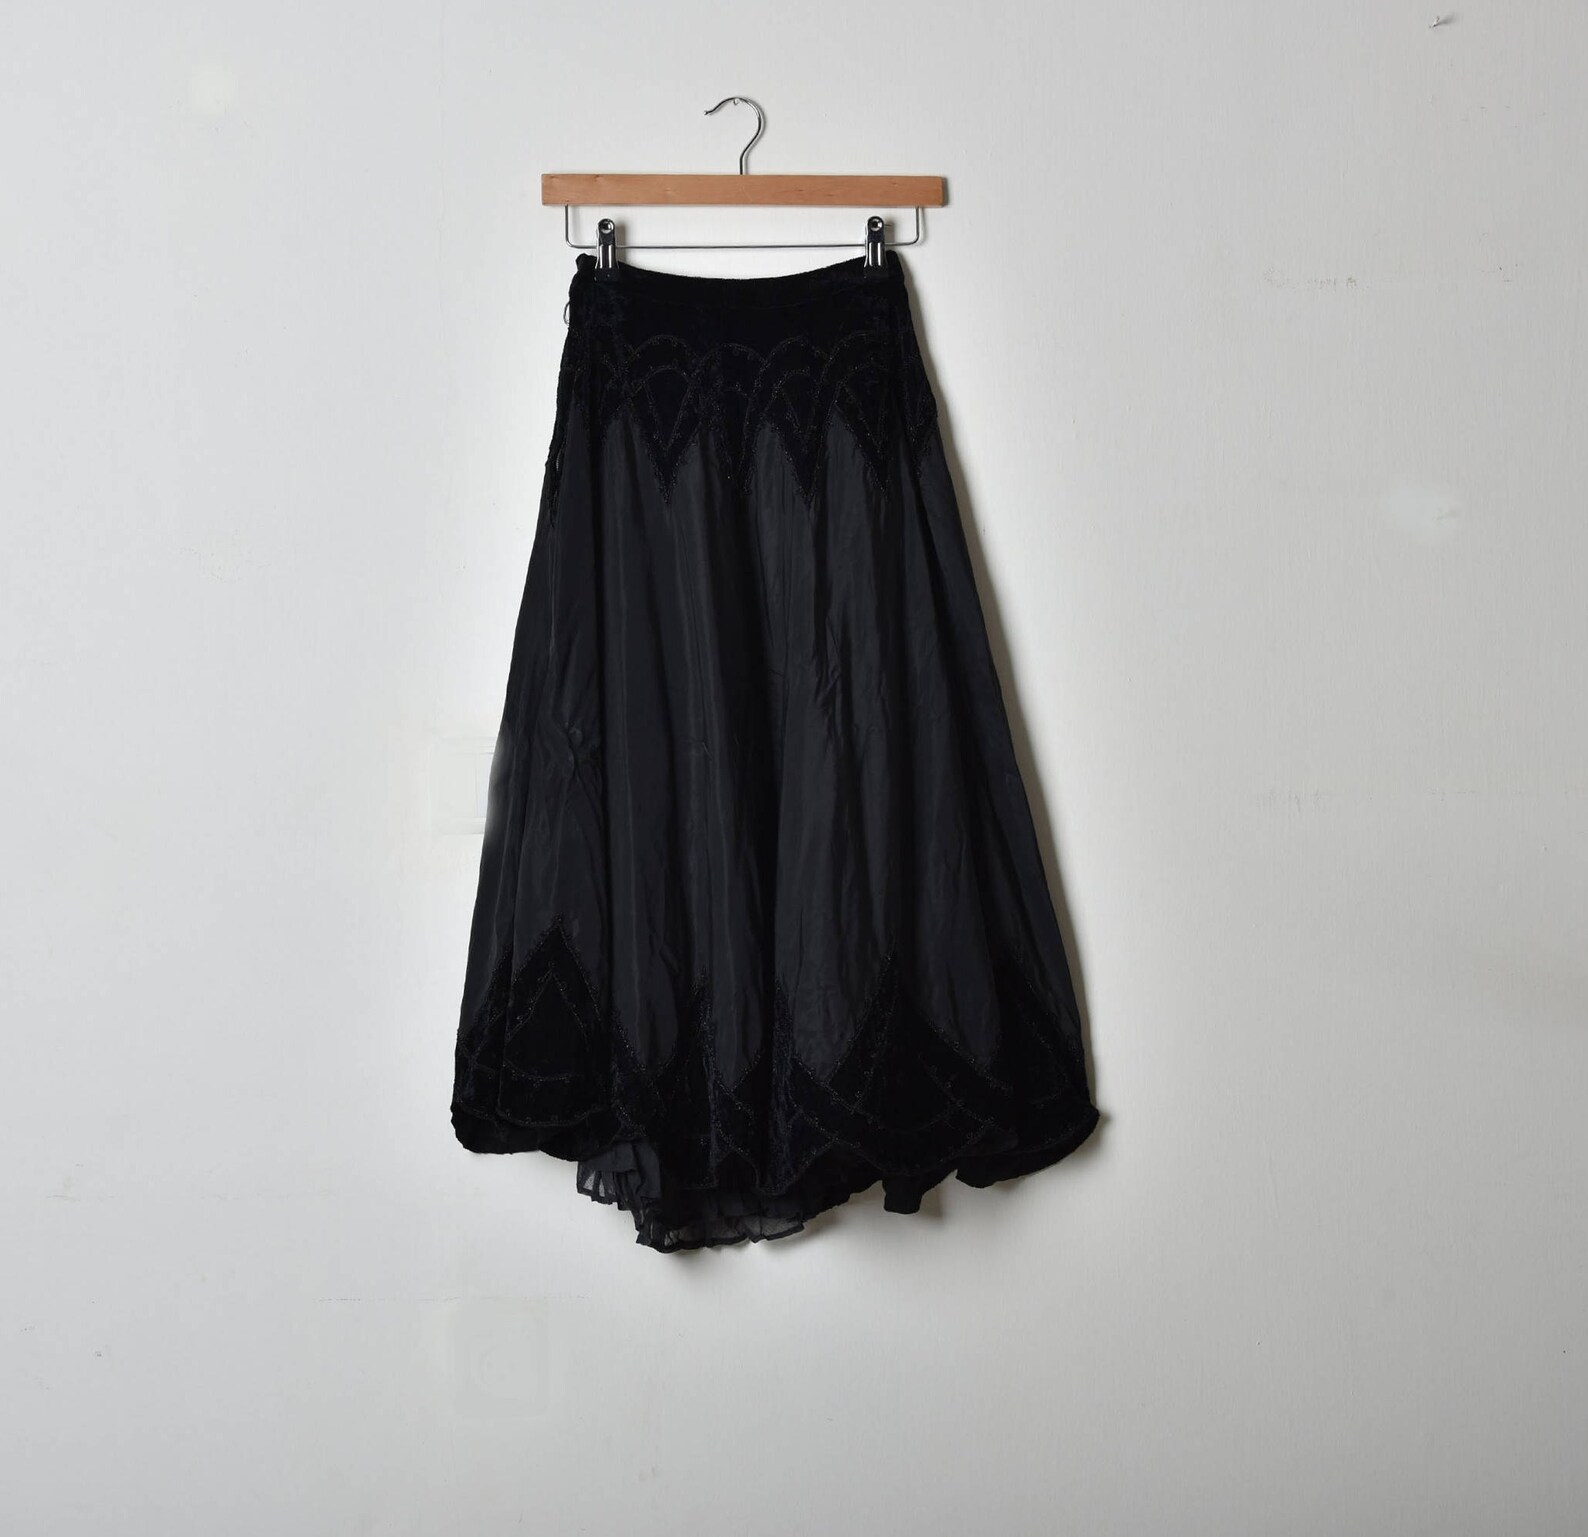 Long Black Skirt Flared Skirt Full Circle Skirt Midi Skirt - Etsy